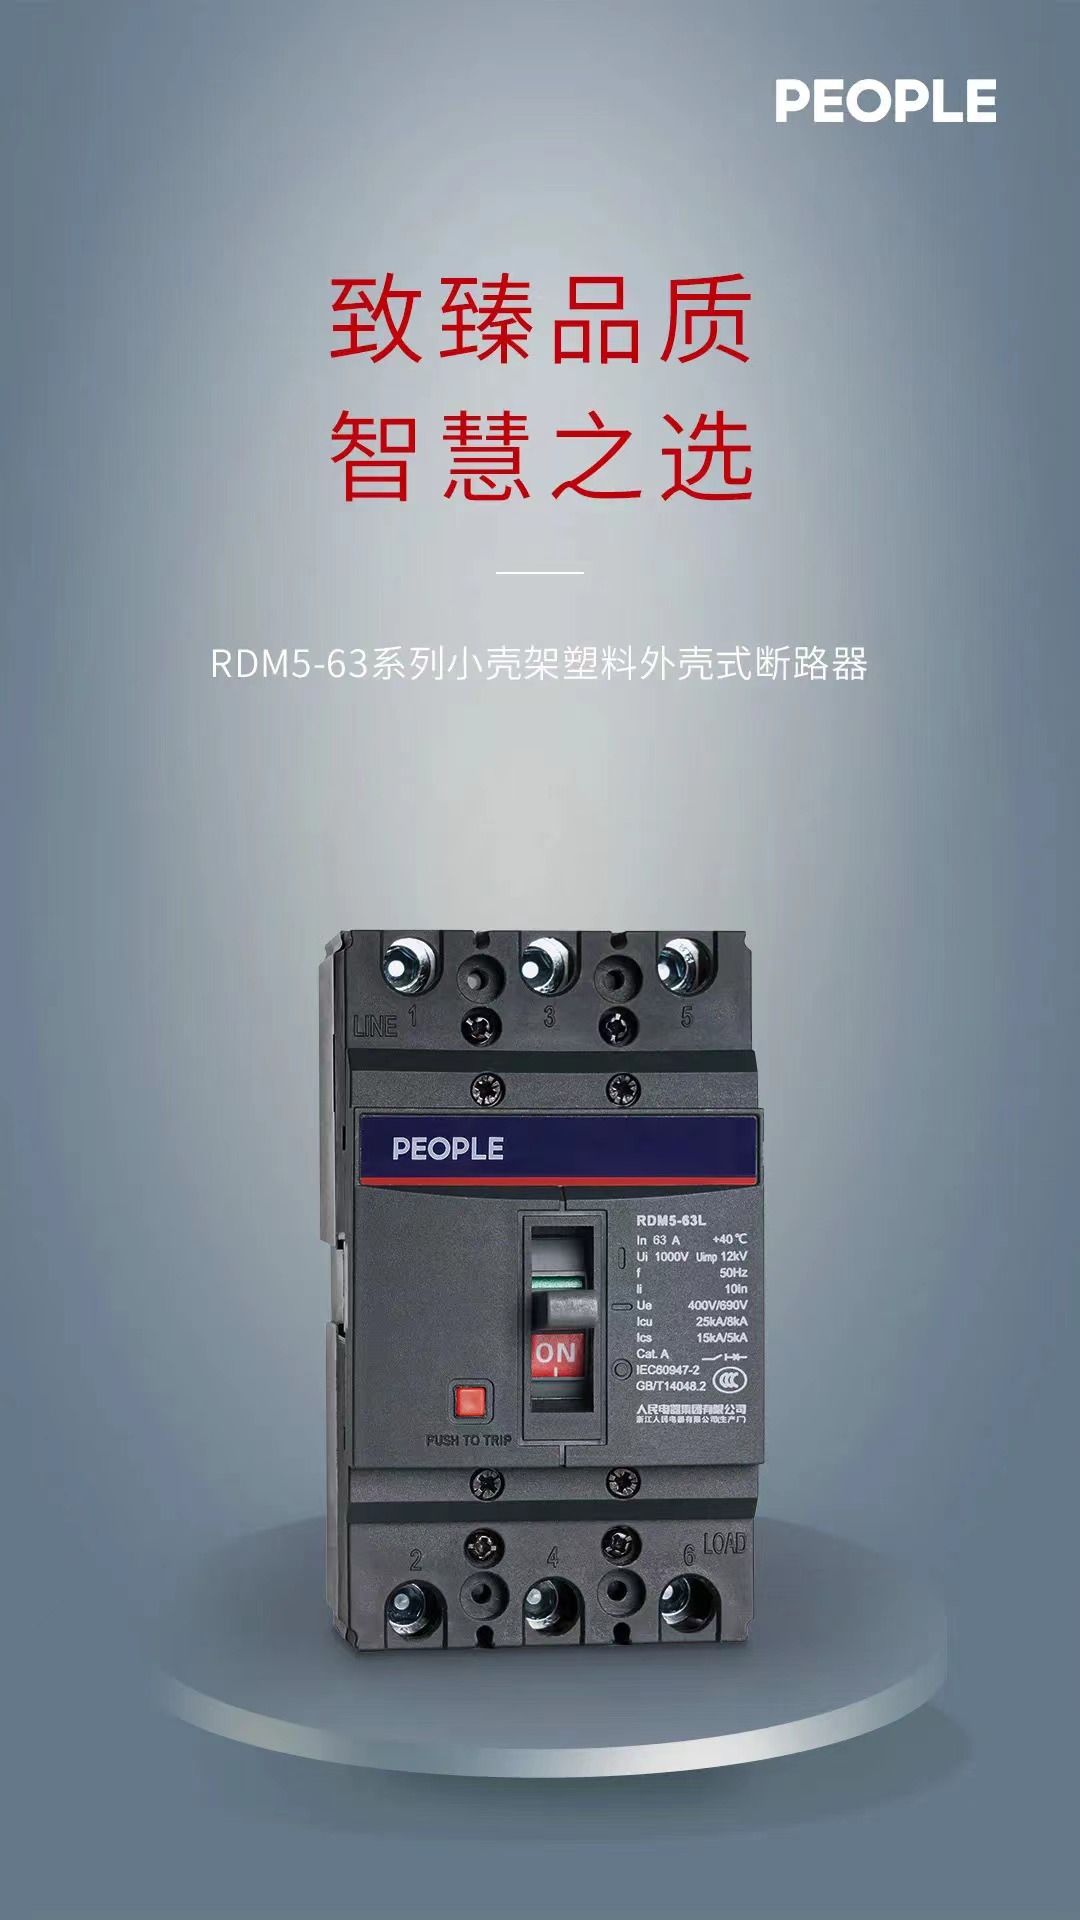 RDM5-63 andian-dahatsoratra kely plastika tranga fizaran-tany breaker, manapaka ny tsipika ambany, feno kokoa (1)